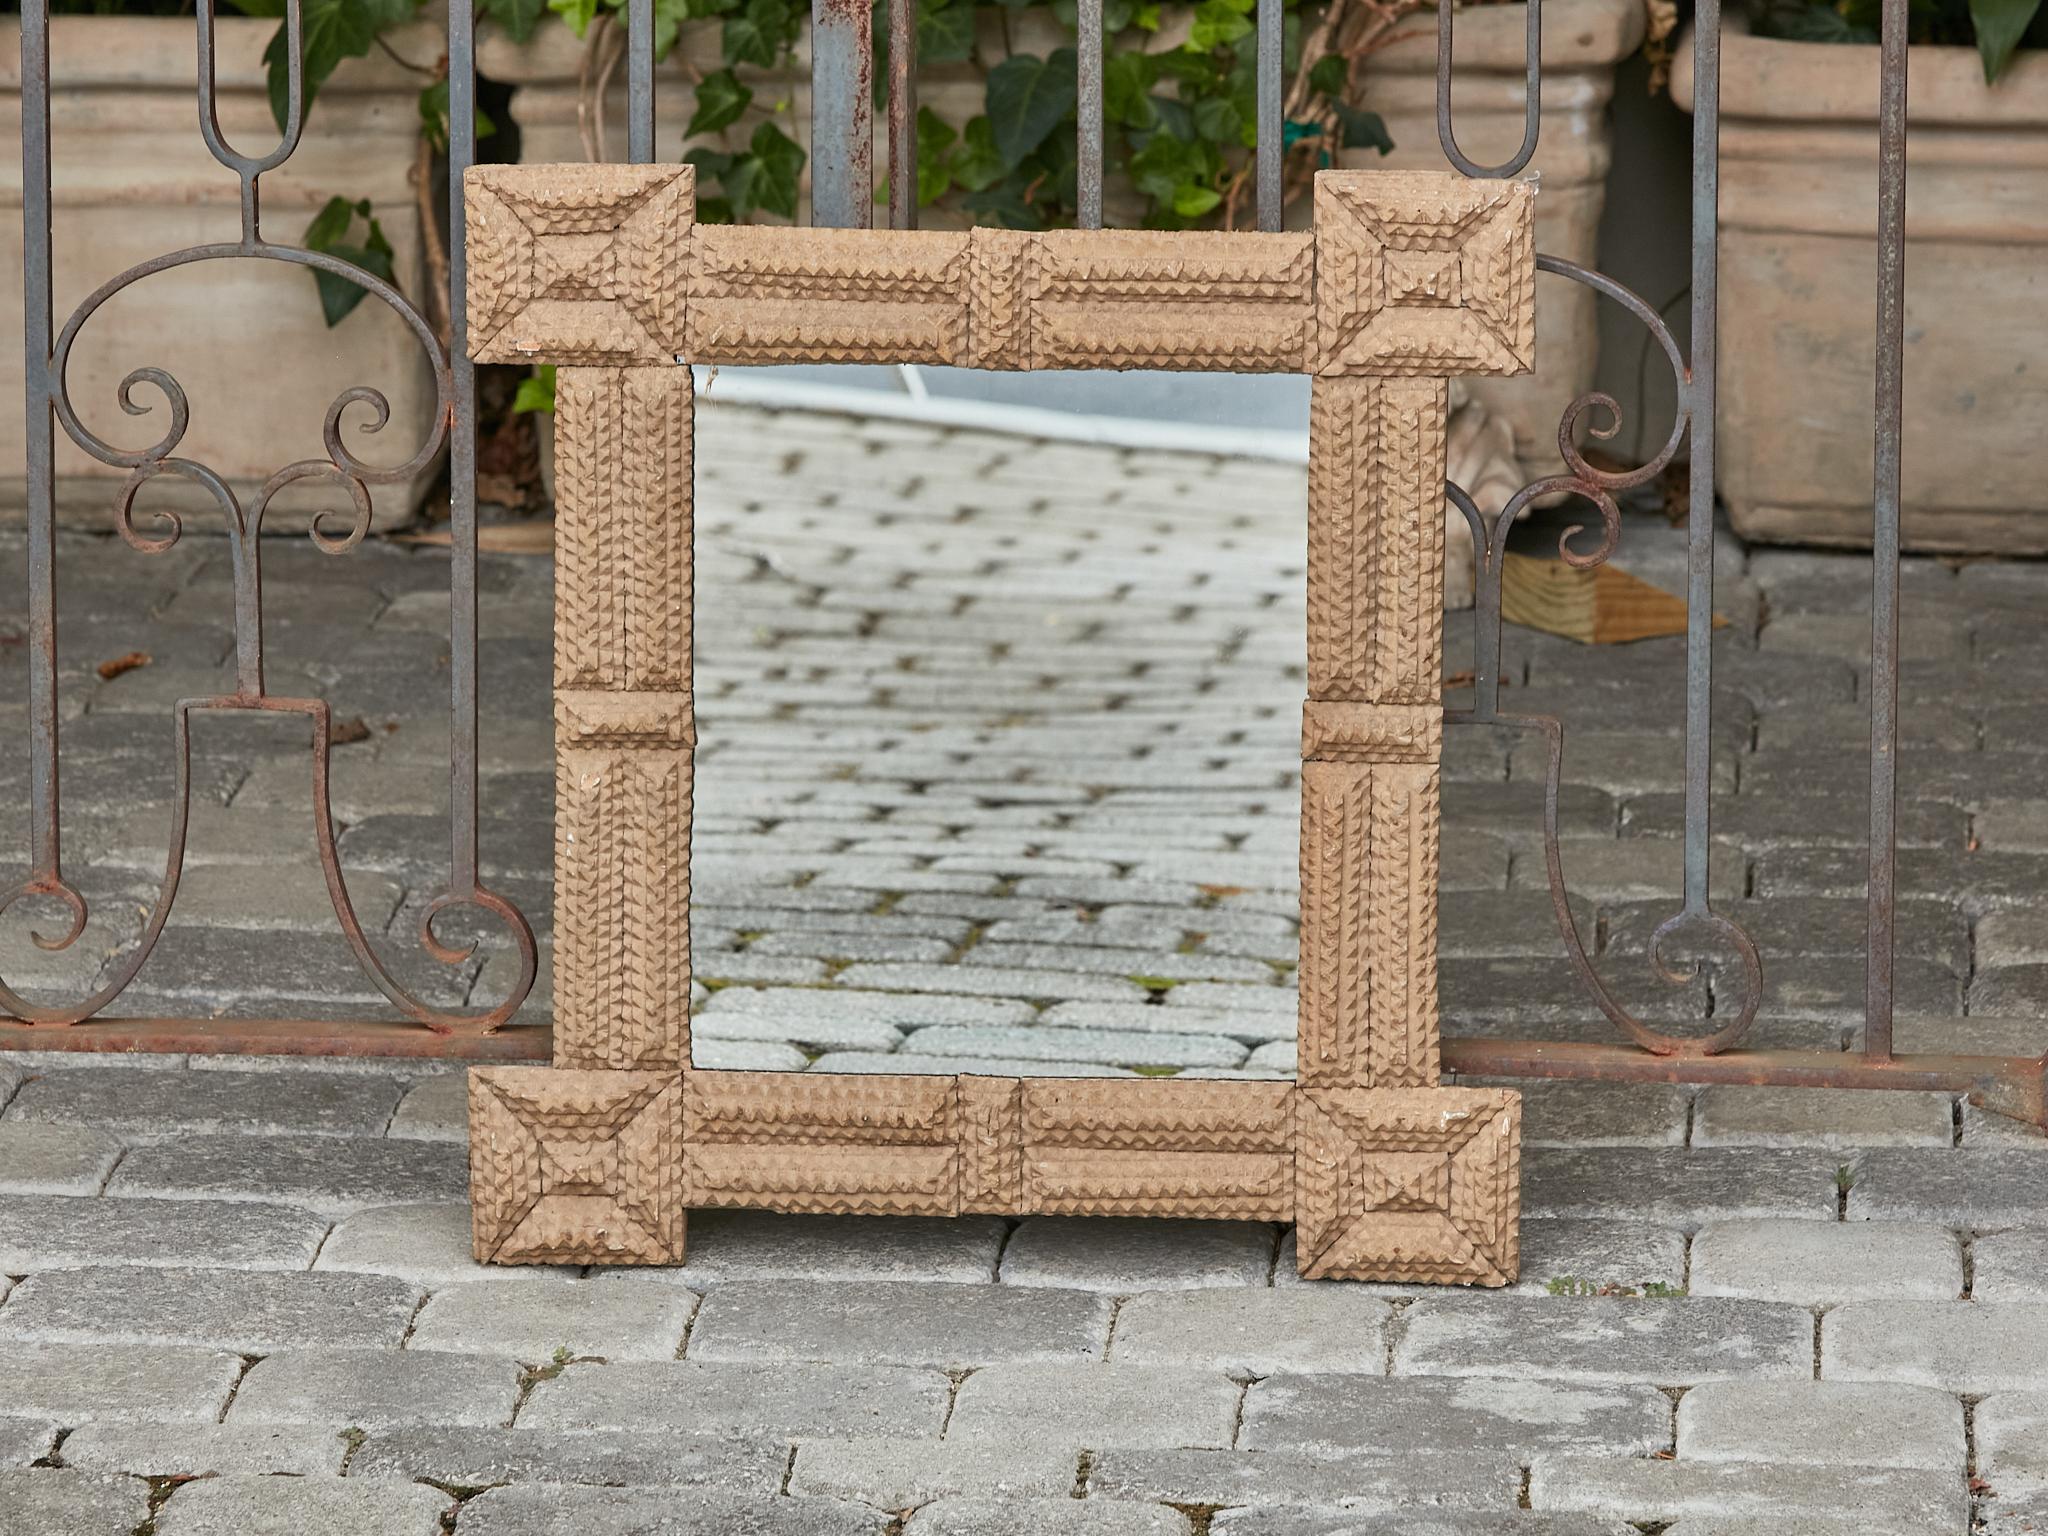 Ein französischer, handgeschnitzter Holzspiegel aus der Jahrhundertwende um 1900 mit quadratischen, vorstehenden Ecken. Machen Sie einen Schritt zurück in die Vergangenheit und lassen Sie sich vom rustikalen Charme dieses exquisiten handgeschnitzten